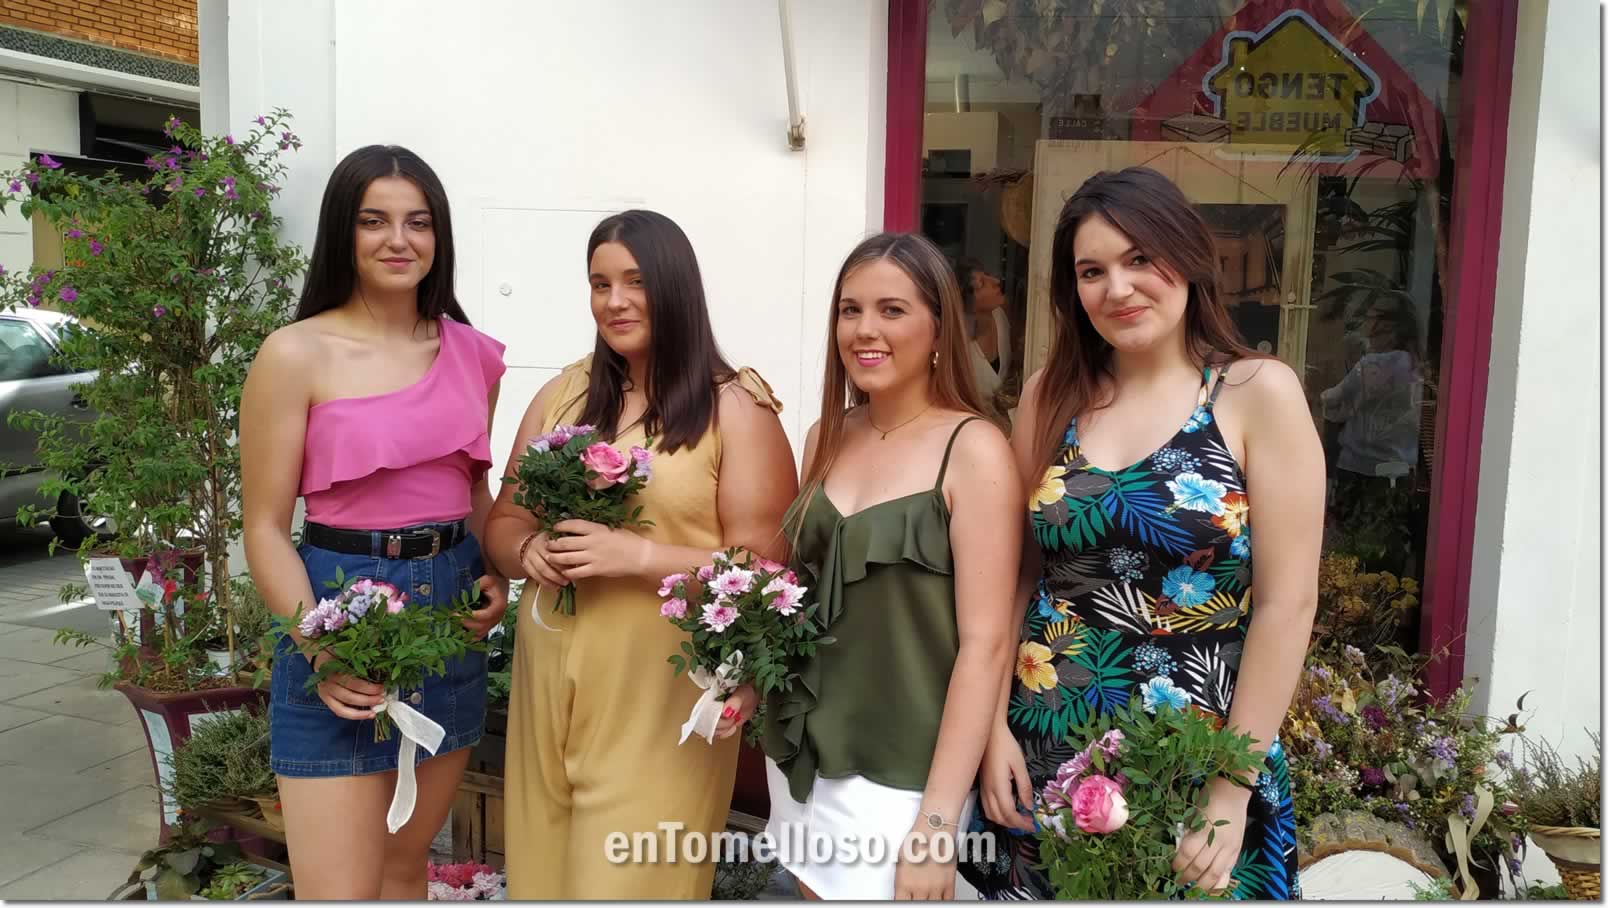 Andrea, Lorena y Mónica las Madrinas de Feria Fiestas Tomelloso 2019